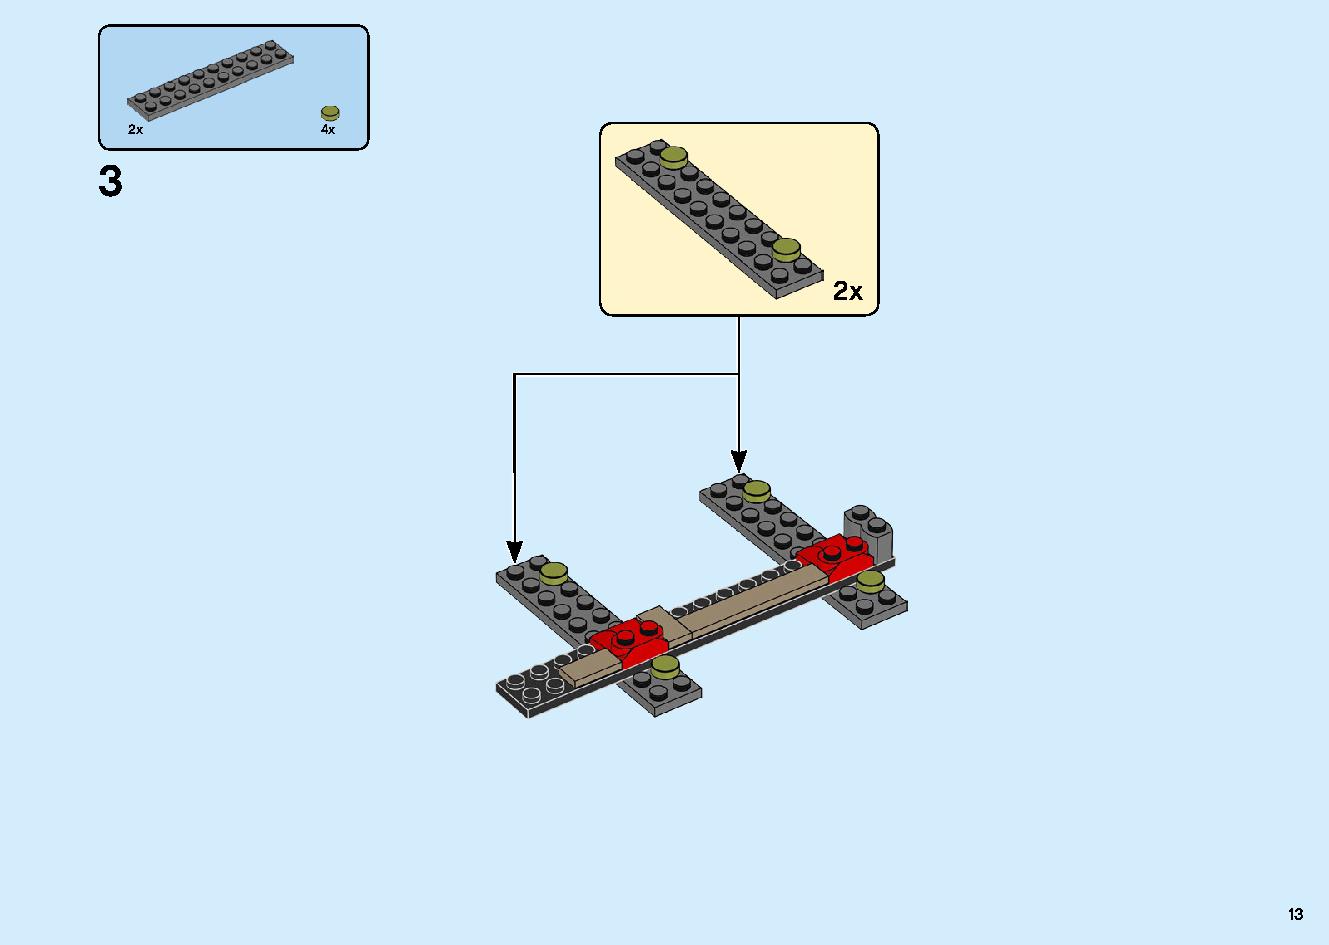 陸上戦艦バウンティ号 70677 レゴの商品情報 レゴの説明書・組立方法 13 page